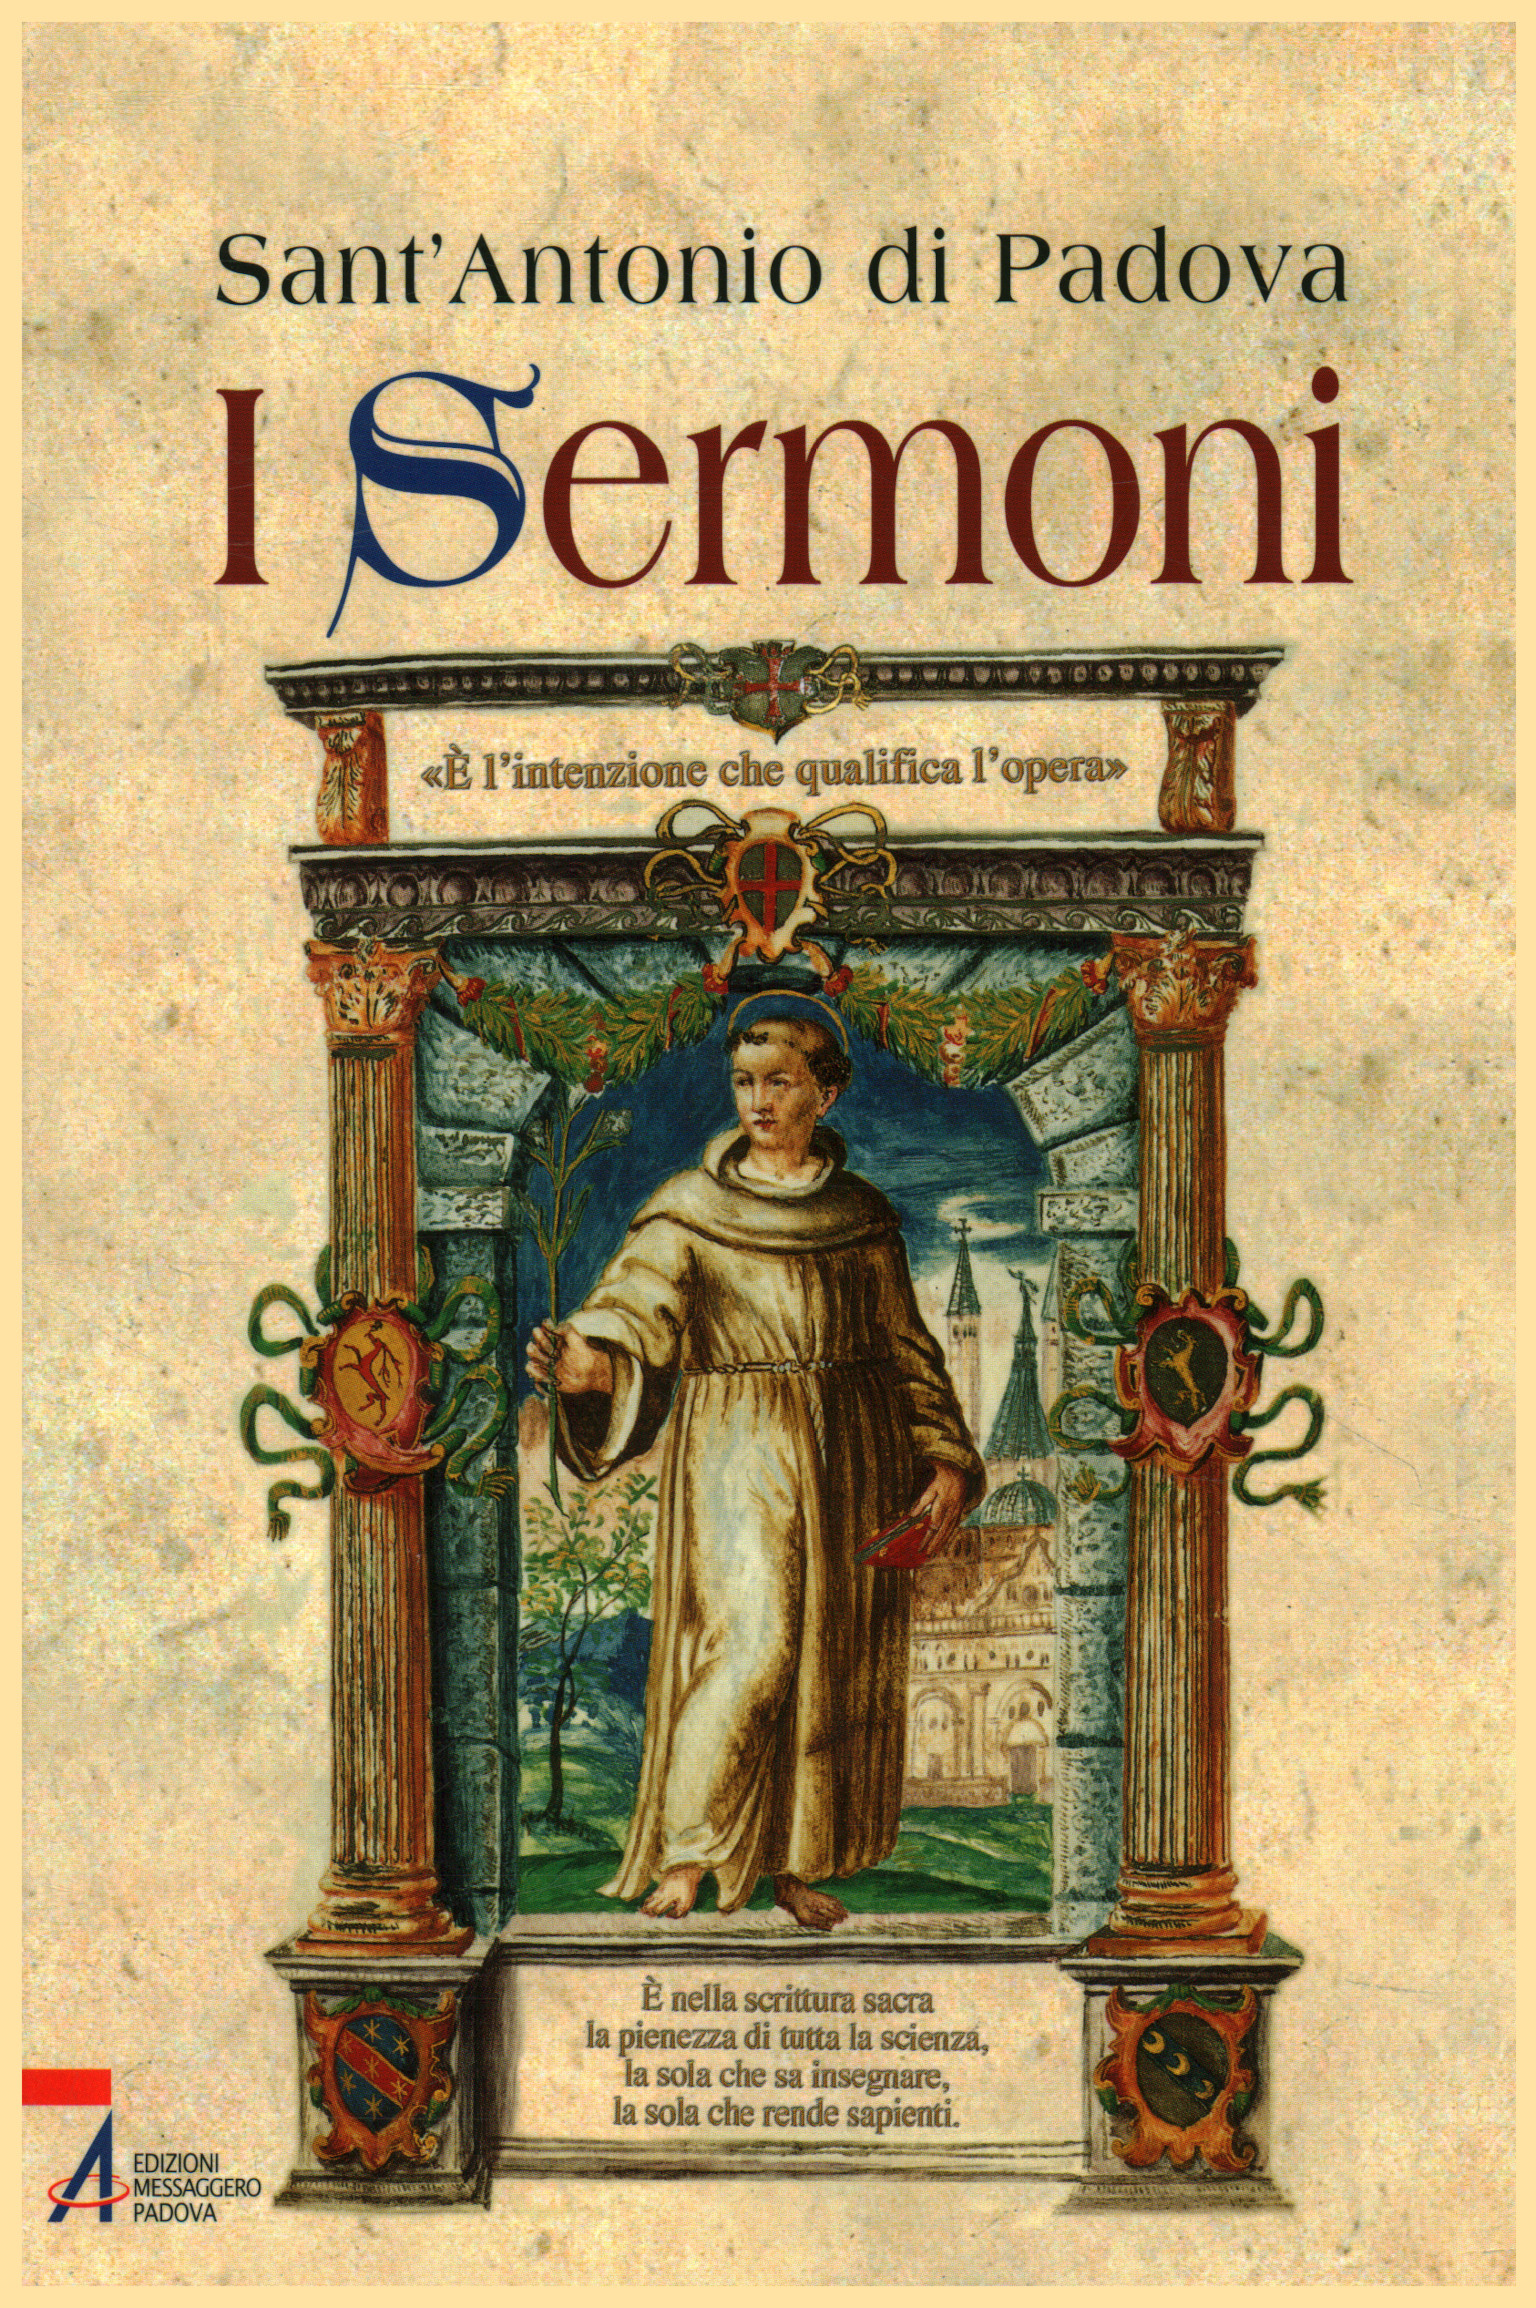 The sermons